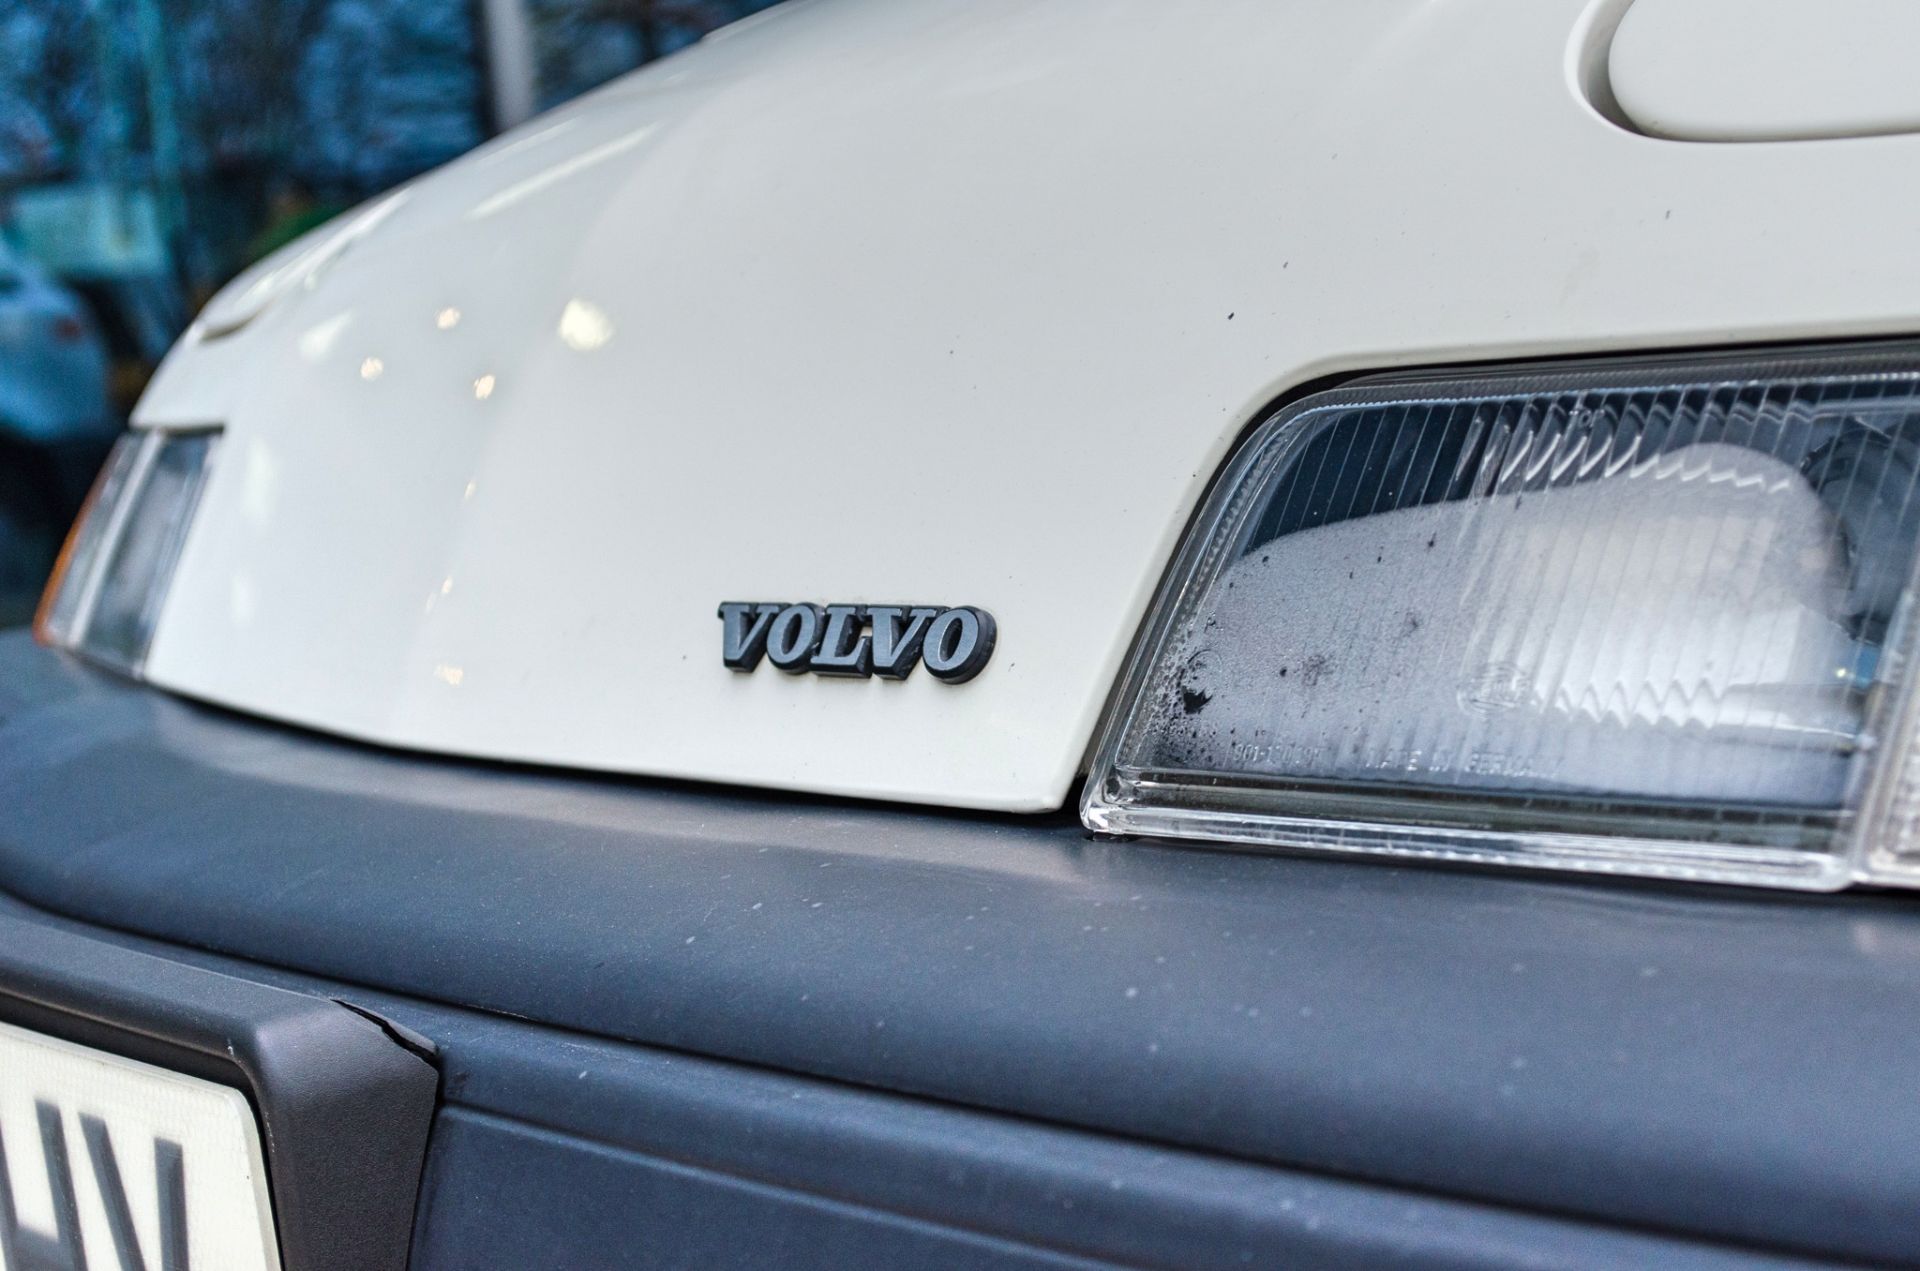 1987 Volvo 480 ES 1721CC 3 door hatchback - Image 29 of 56